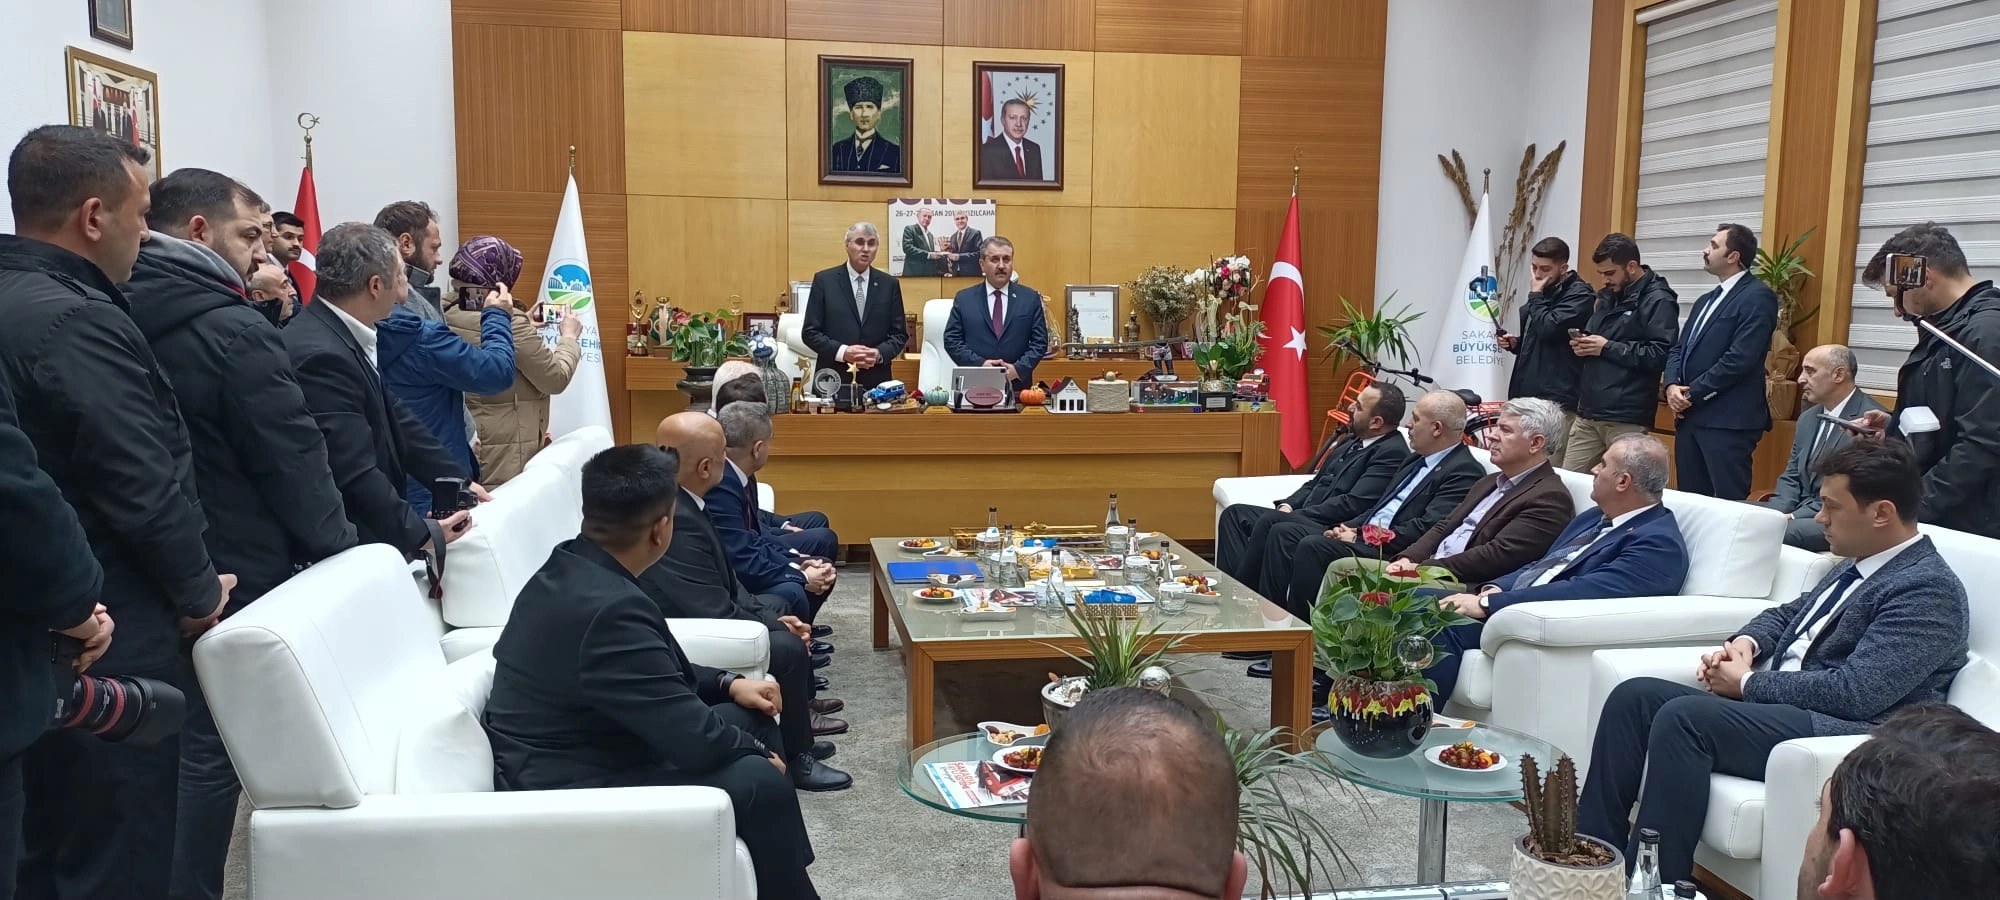 BBP Genel Başkanı Destici'den Büyükşehir'e ziyaret